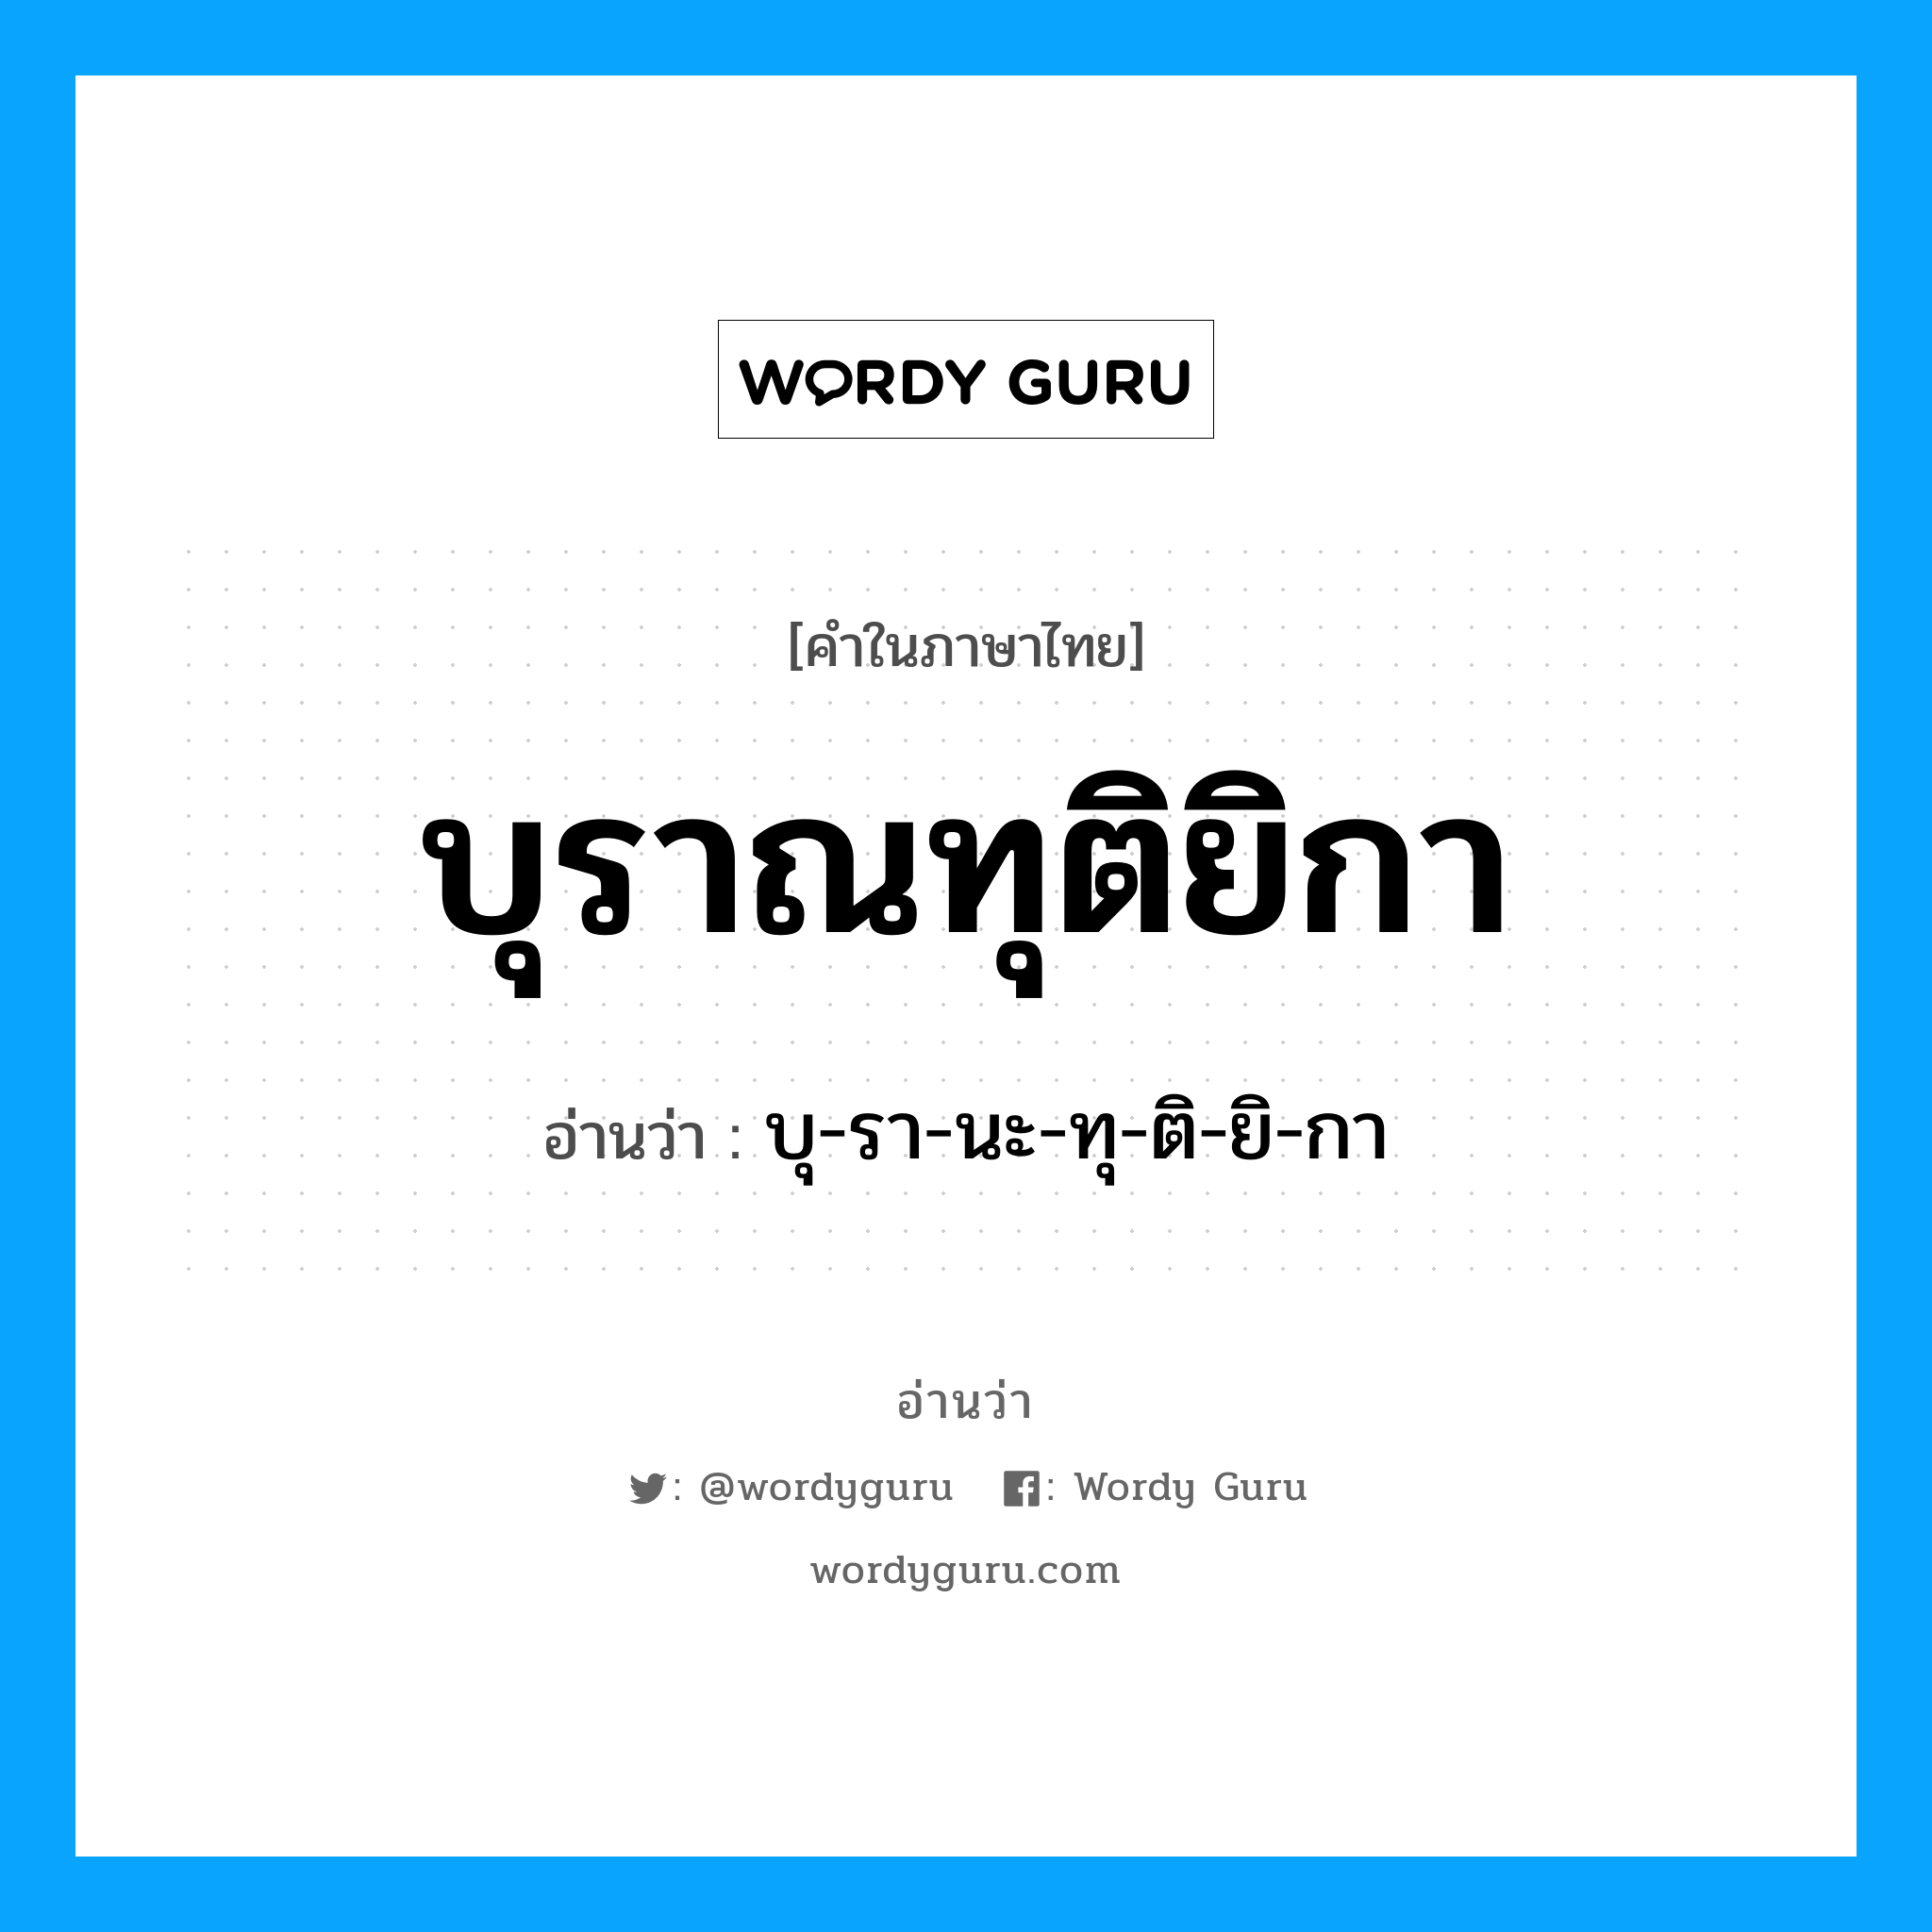 บุ-รา-นะ-ทุ-ติ-ยิ-กา เป็นคำอ่านของคำไหน?, คำในภาษาไทย บุ-รา-นะ-ทุ-ติ-ยิ-กา อ่านว่า บุราณทุติยิกา